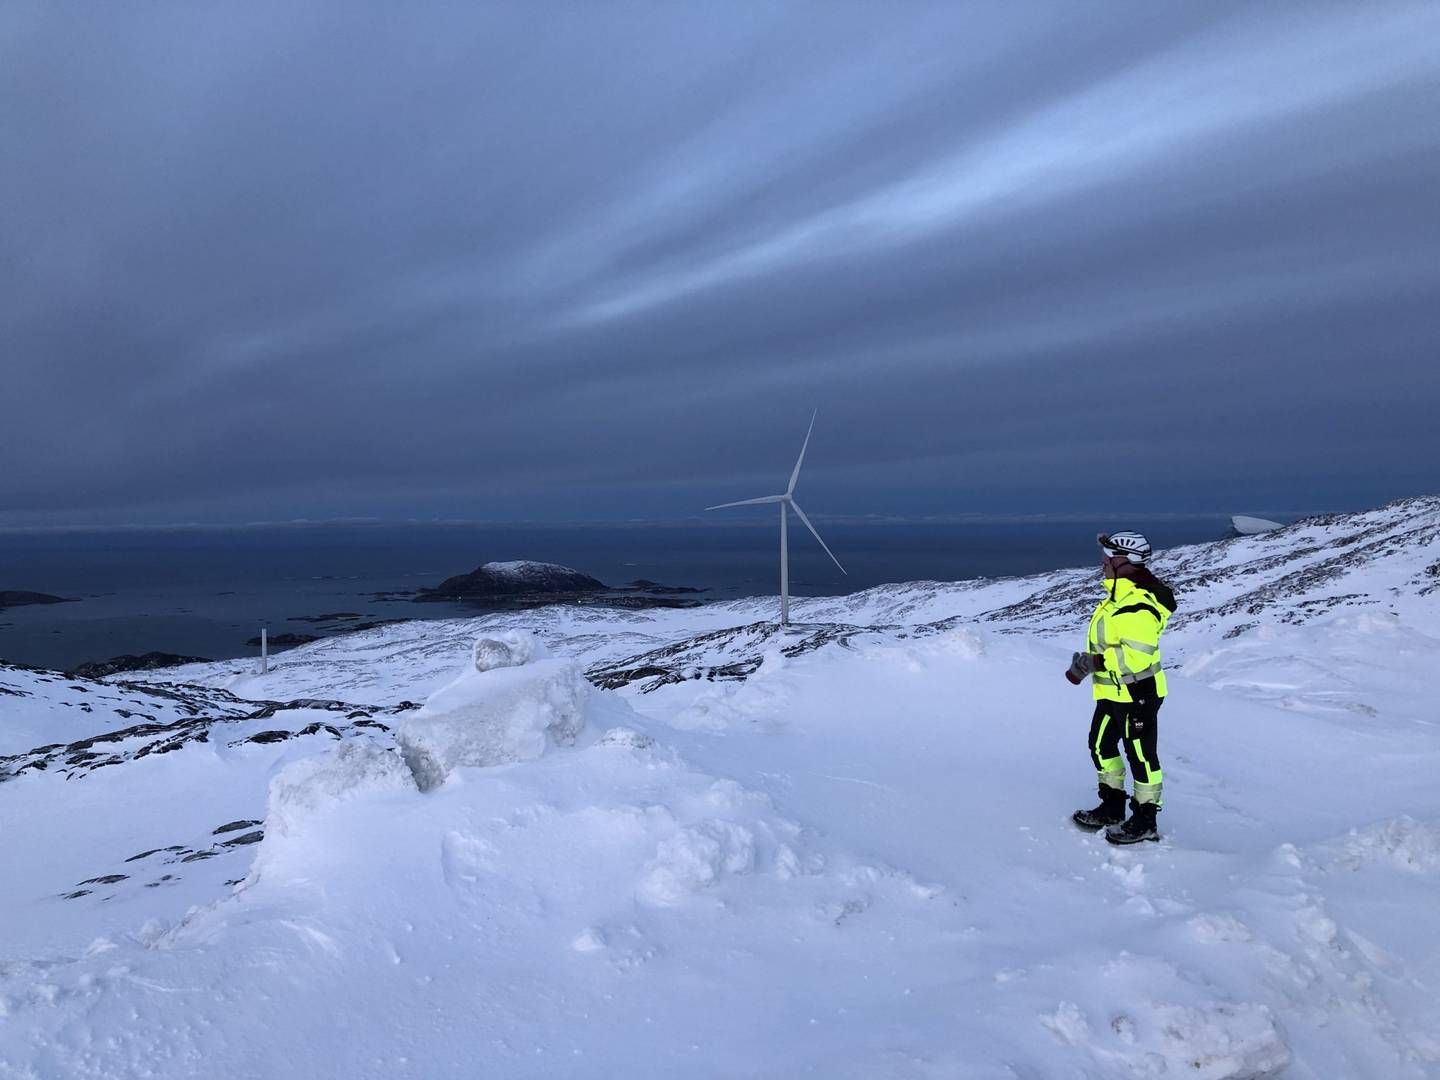 MÅ STENGE: NVE har pålagt vindparken Kvitfjell Raudfjell å stenge produksjonen i én uke av hensyn til reindriften. Selskapet har klaget på vedtaket. | Foto: Kvitfjell Raudfjell vindpark